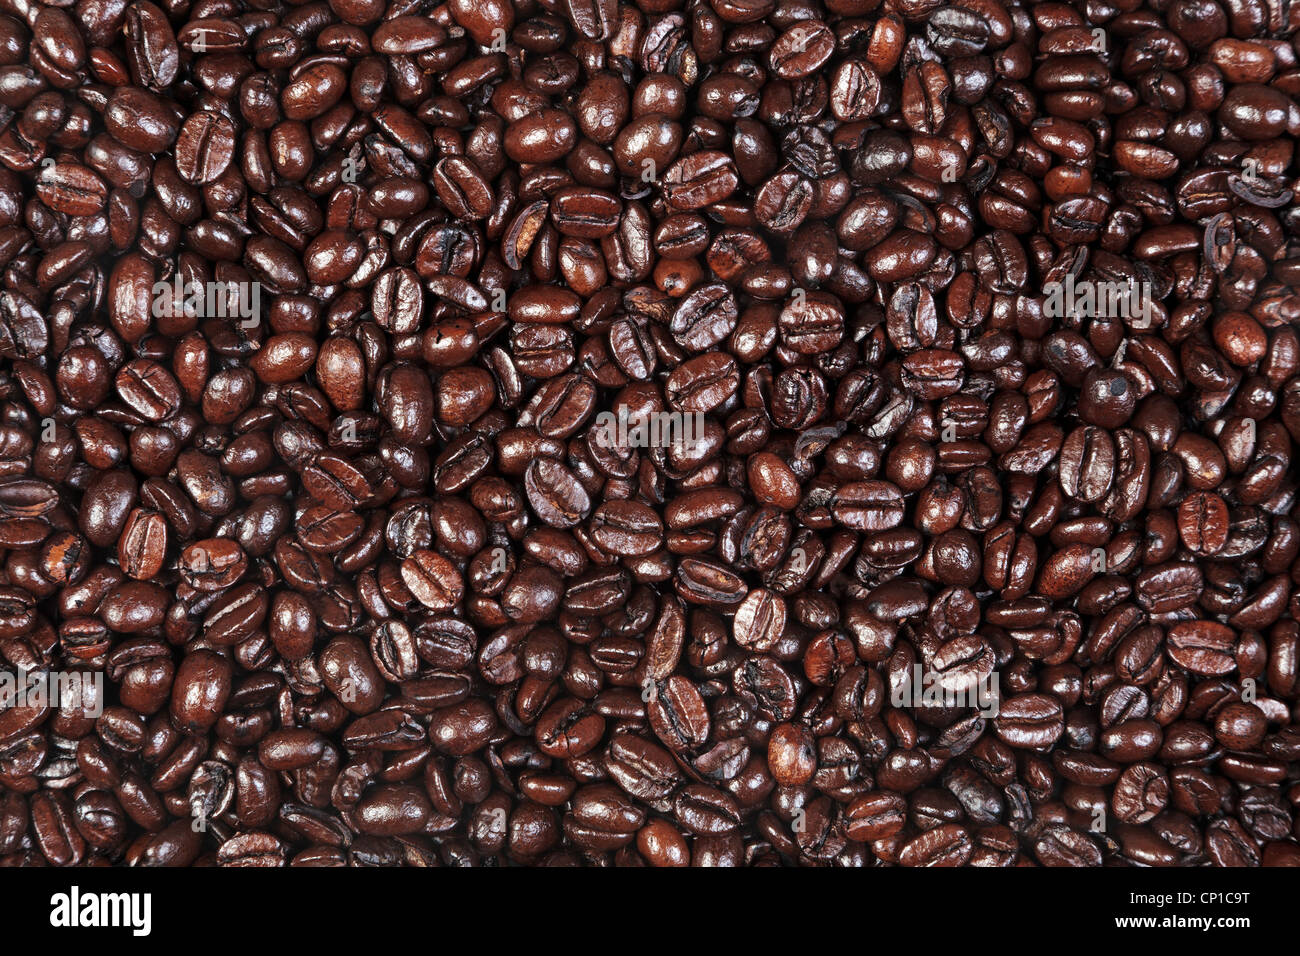 Foto von frisch gerösteten Arabica und Robusta-Kaffee Bohnen geeignet für den Einsatz als Hintergrund. Stockfoto